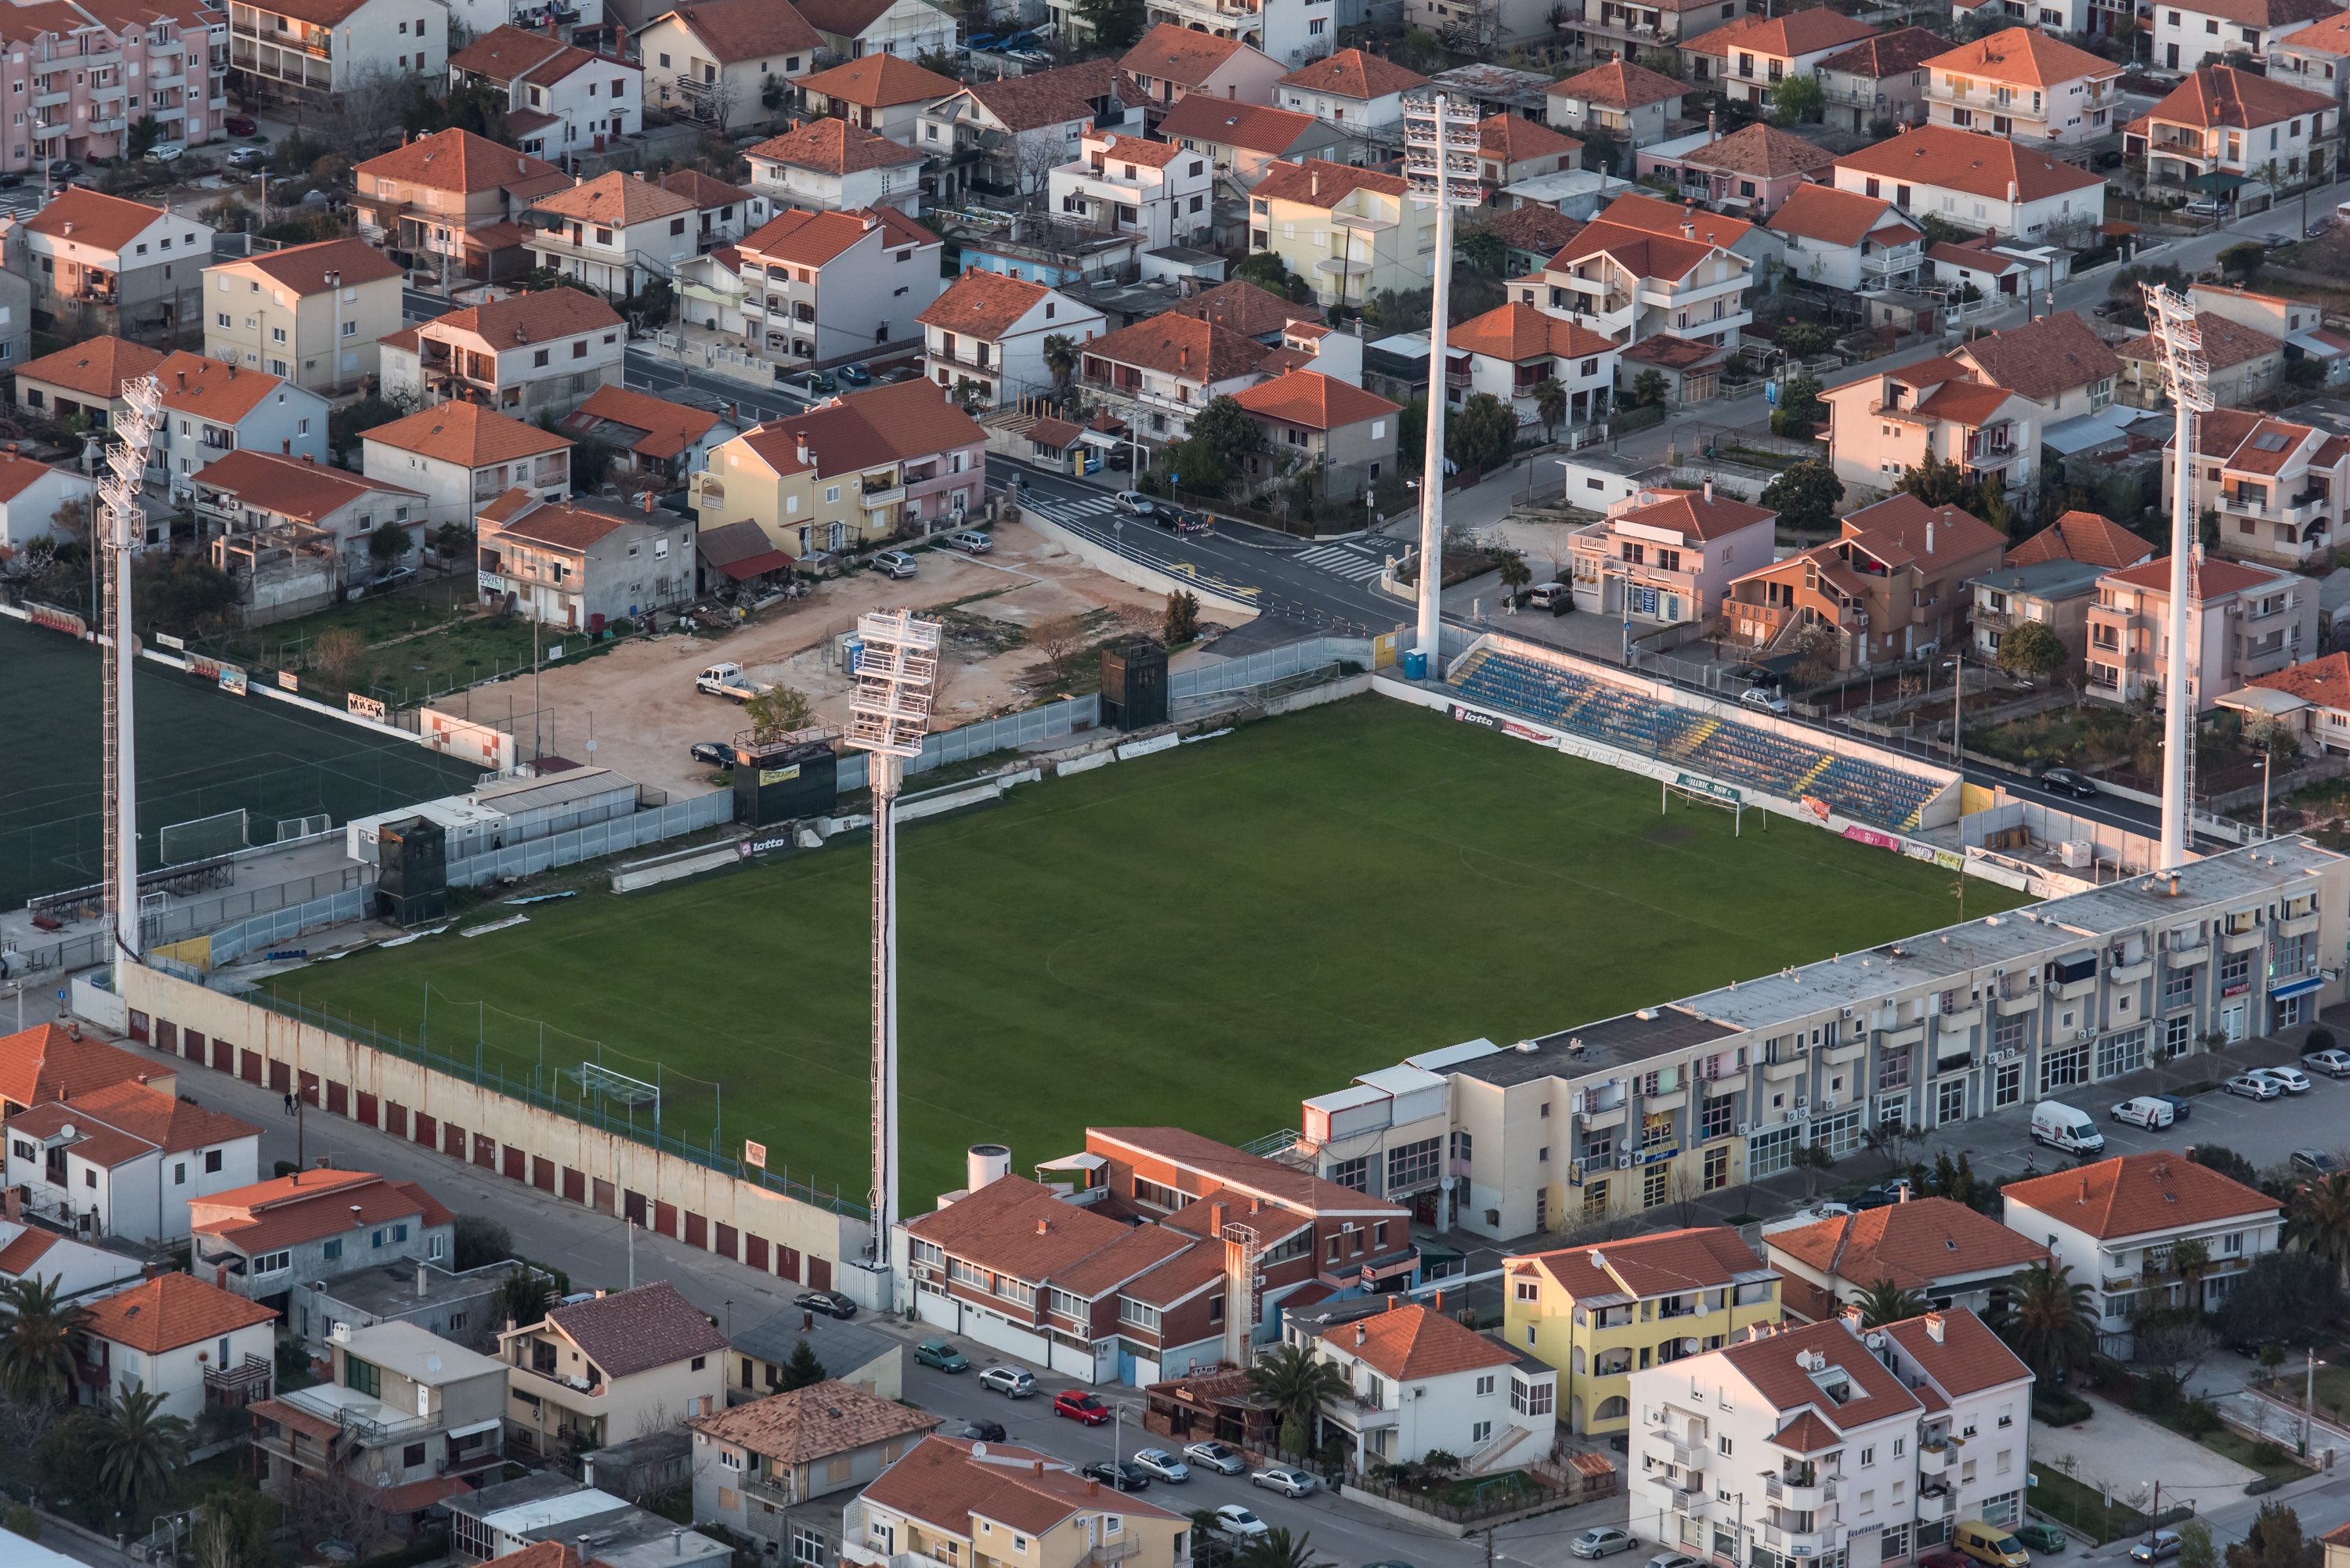 07.04.2015., Zadar - Zadar iz zraka u zalazak sunca. Stadion na Stanovima. 
Photo: Dino Stanin/PIXSELL